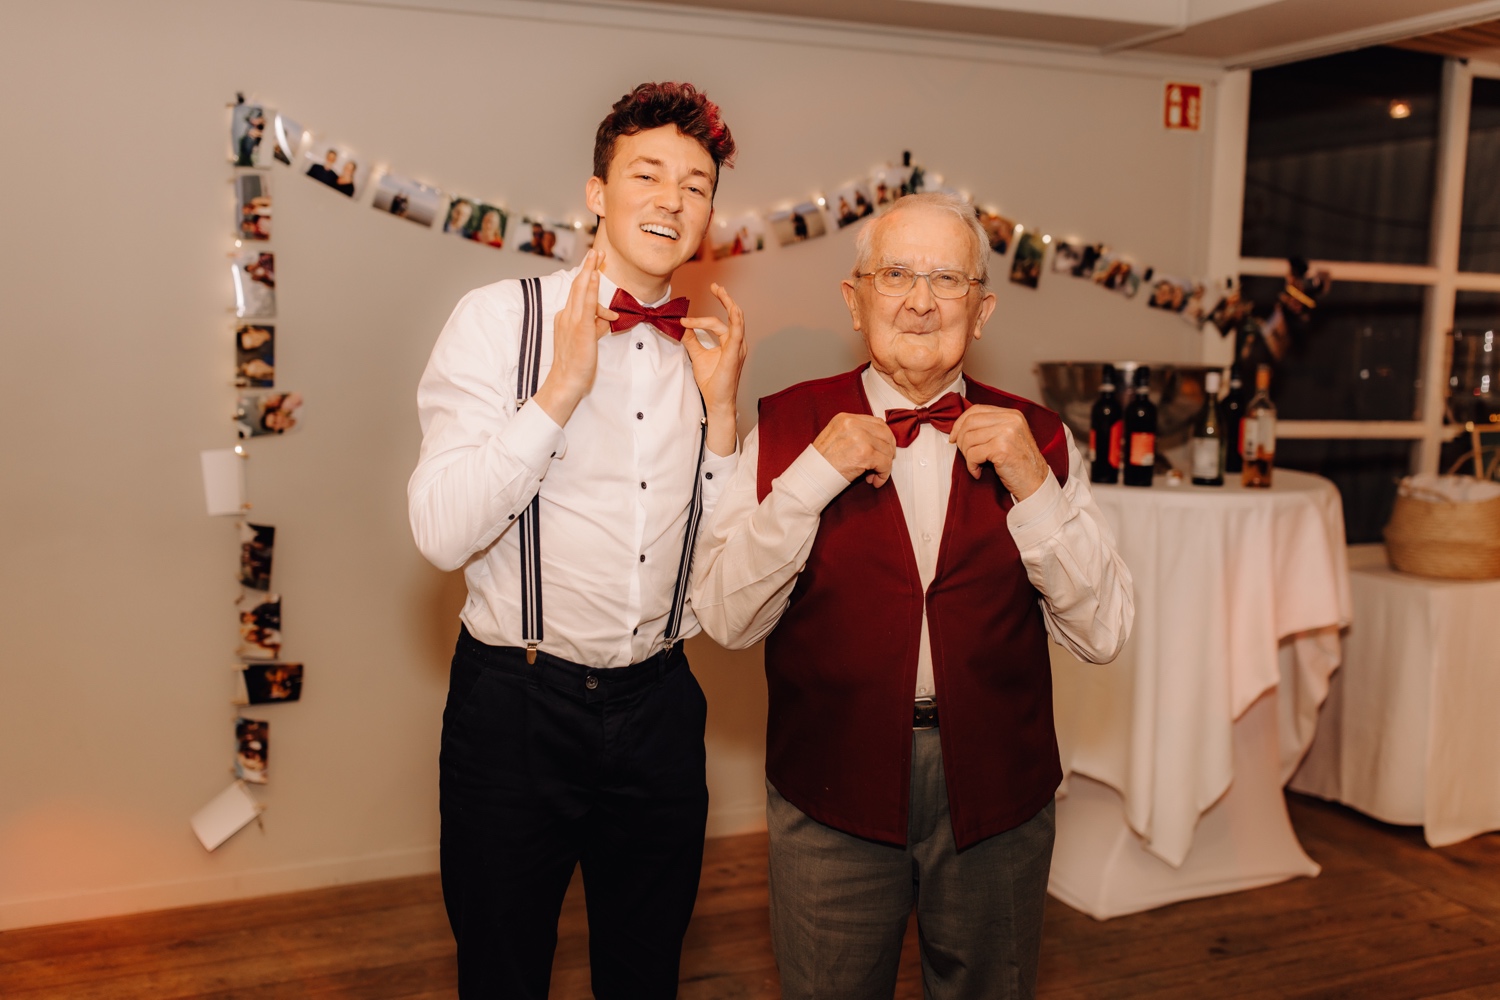 Huwelijksfotograaf Limburg - grootvader poseert met kleinzoon